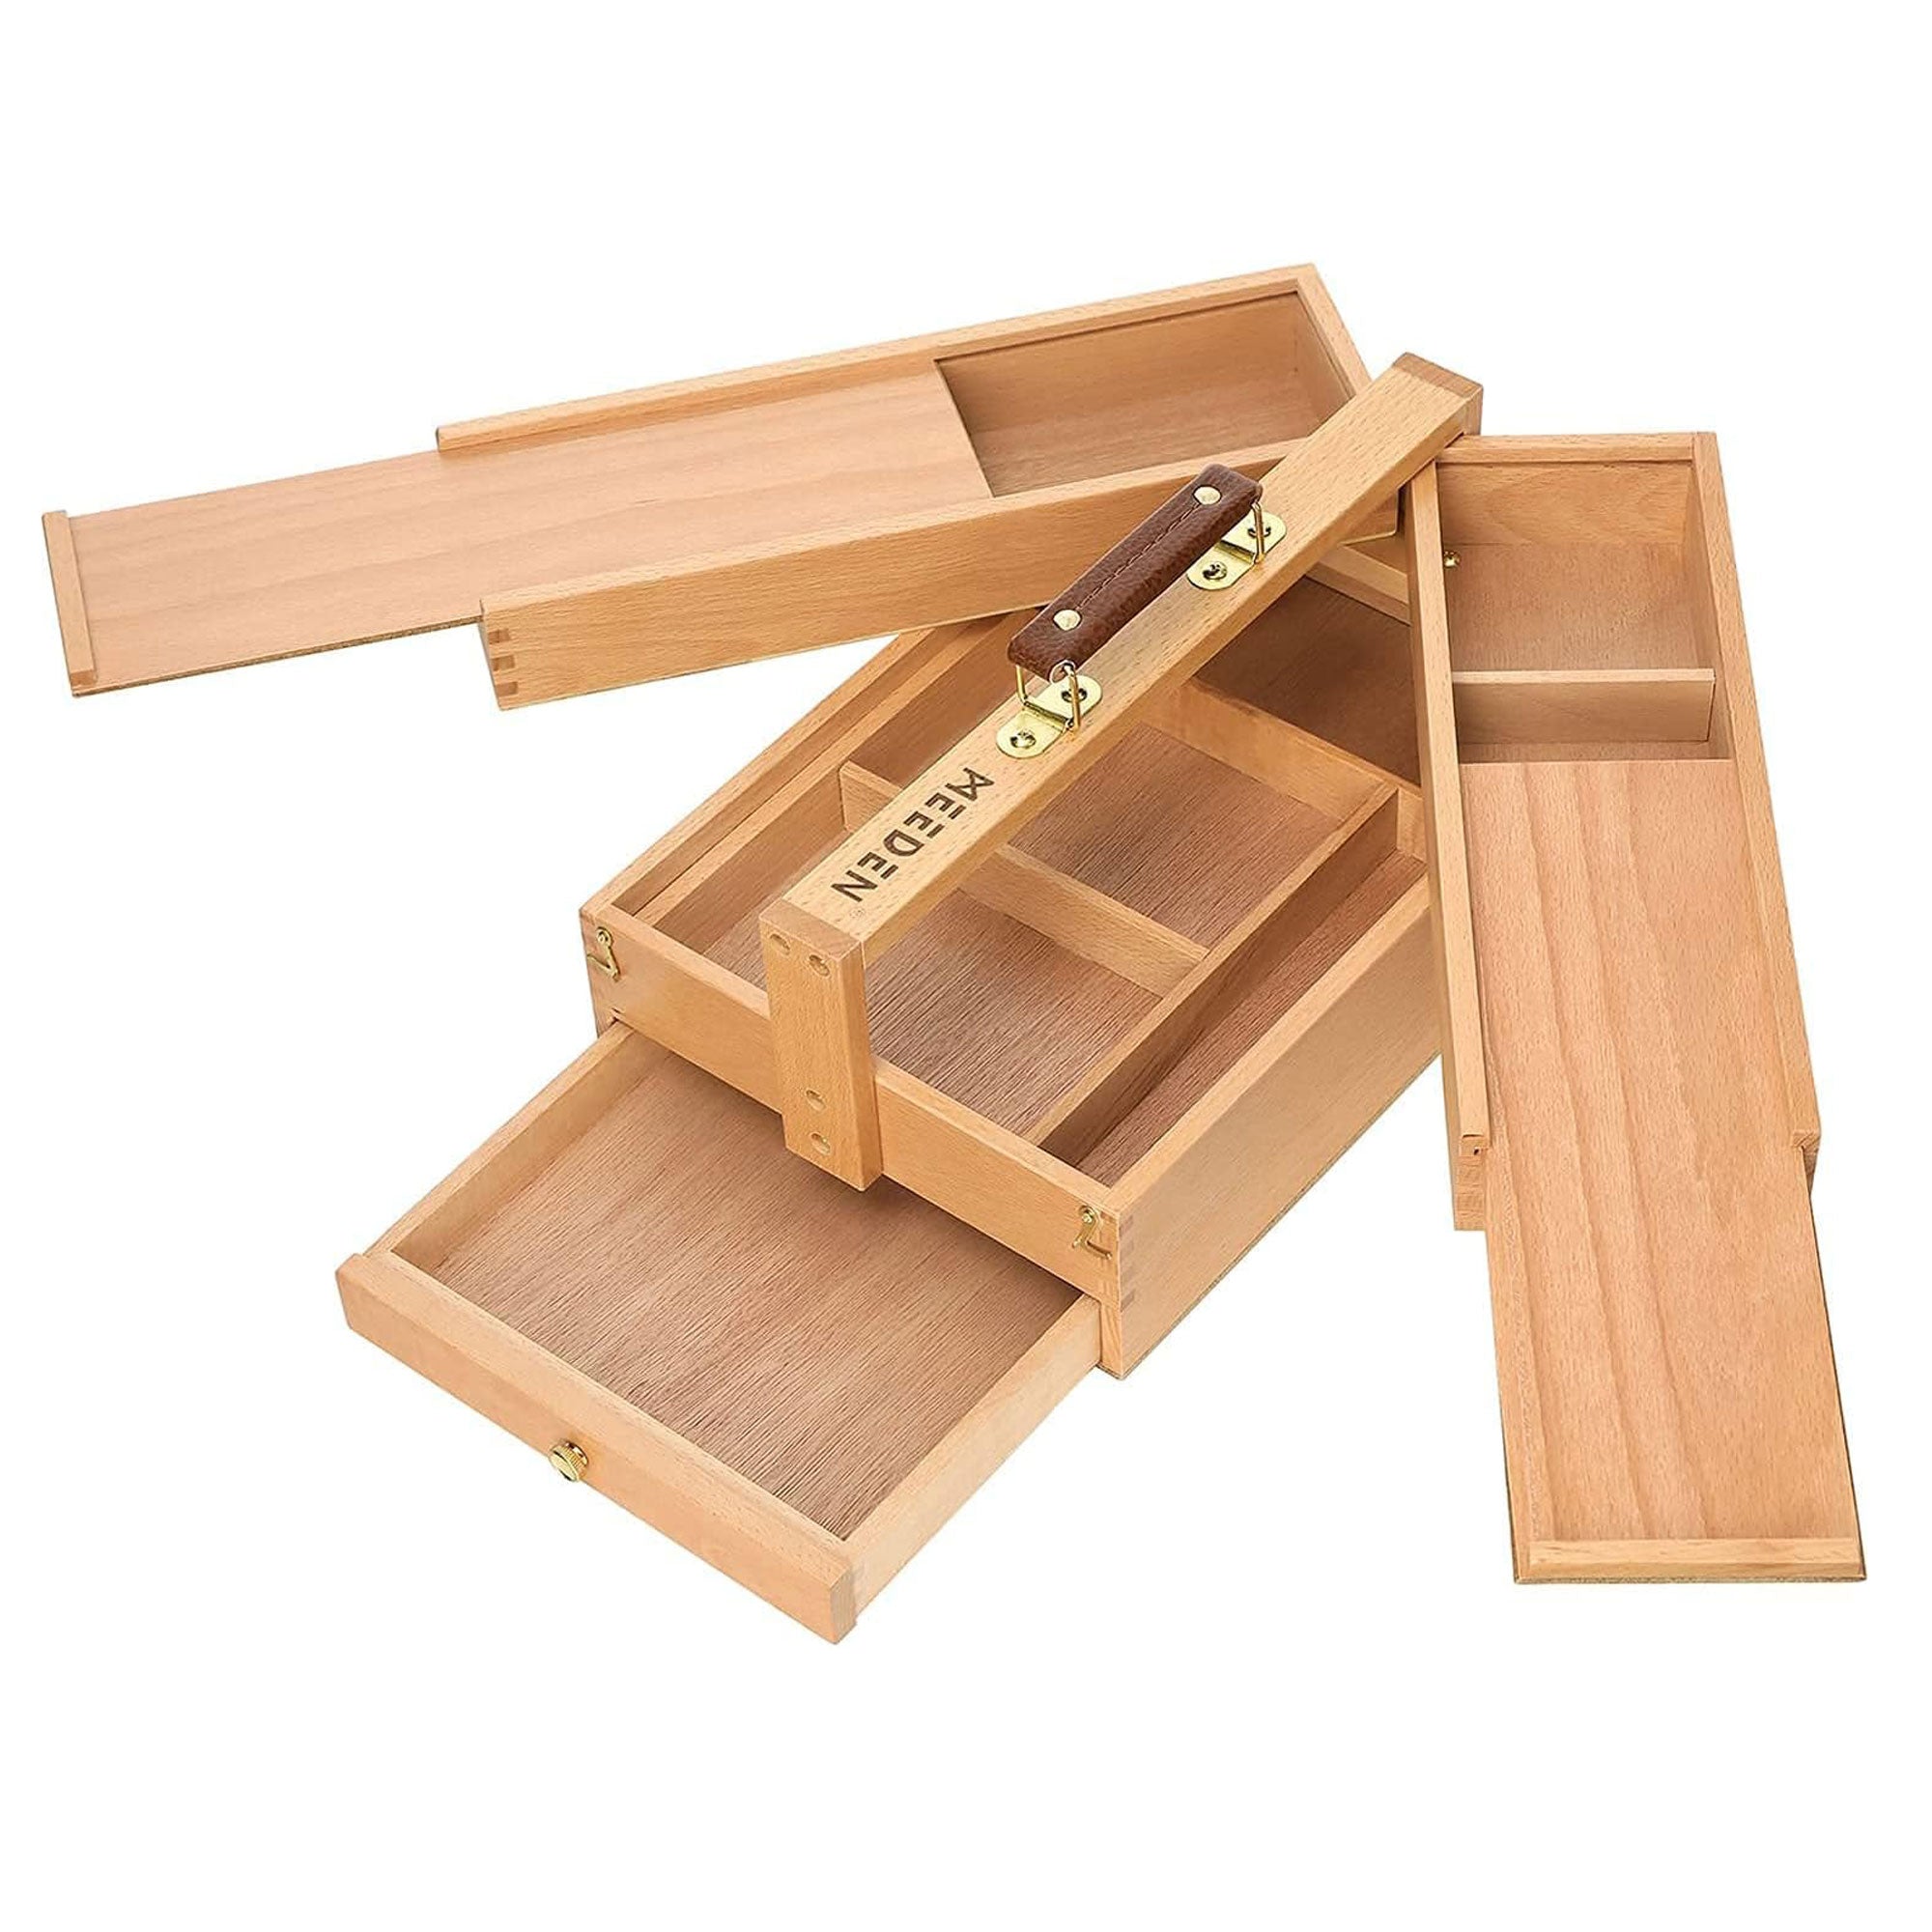 MEEDEN Wooden Art Supply Storage Box 3 Levels